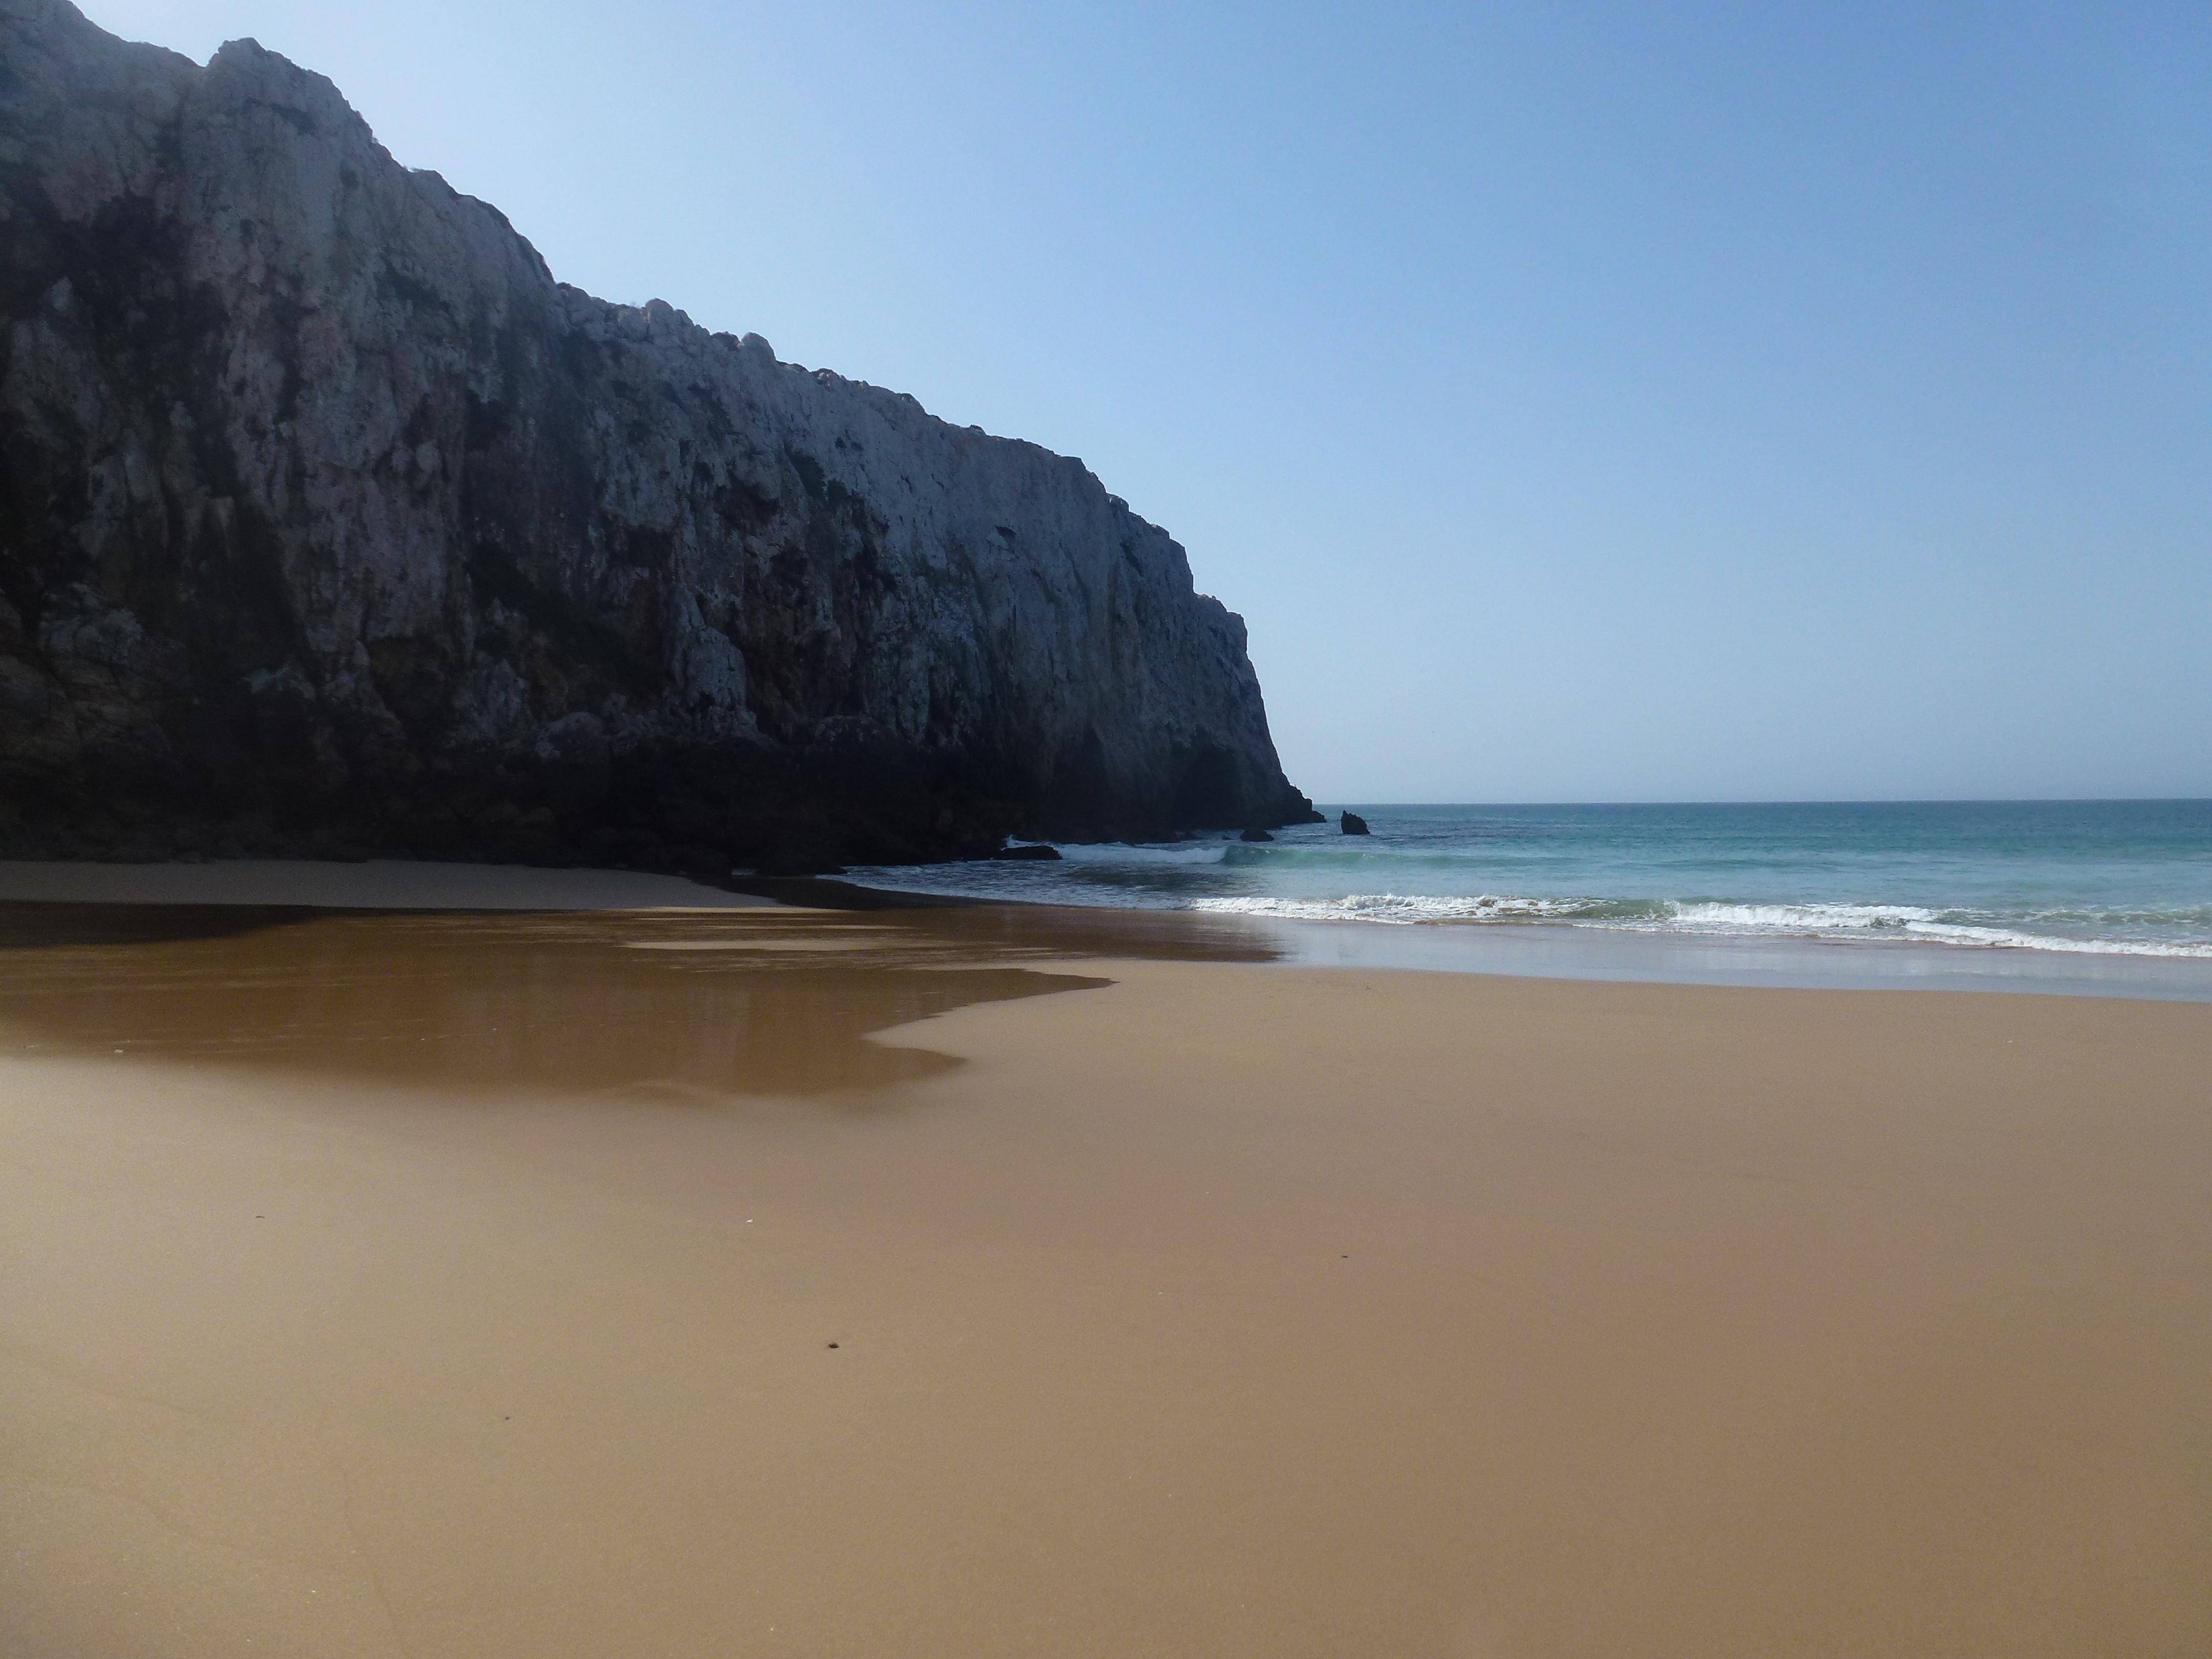 Der perfekte Strand. #summerstyle #praiadobeliche #sagres #portugal #travel #weltreise 